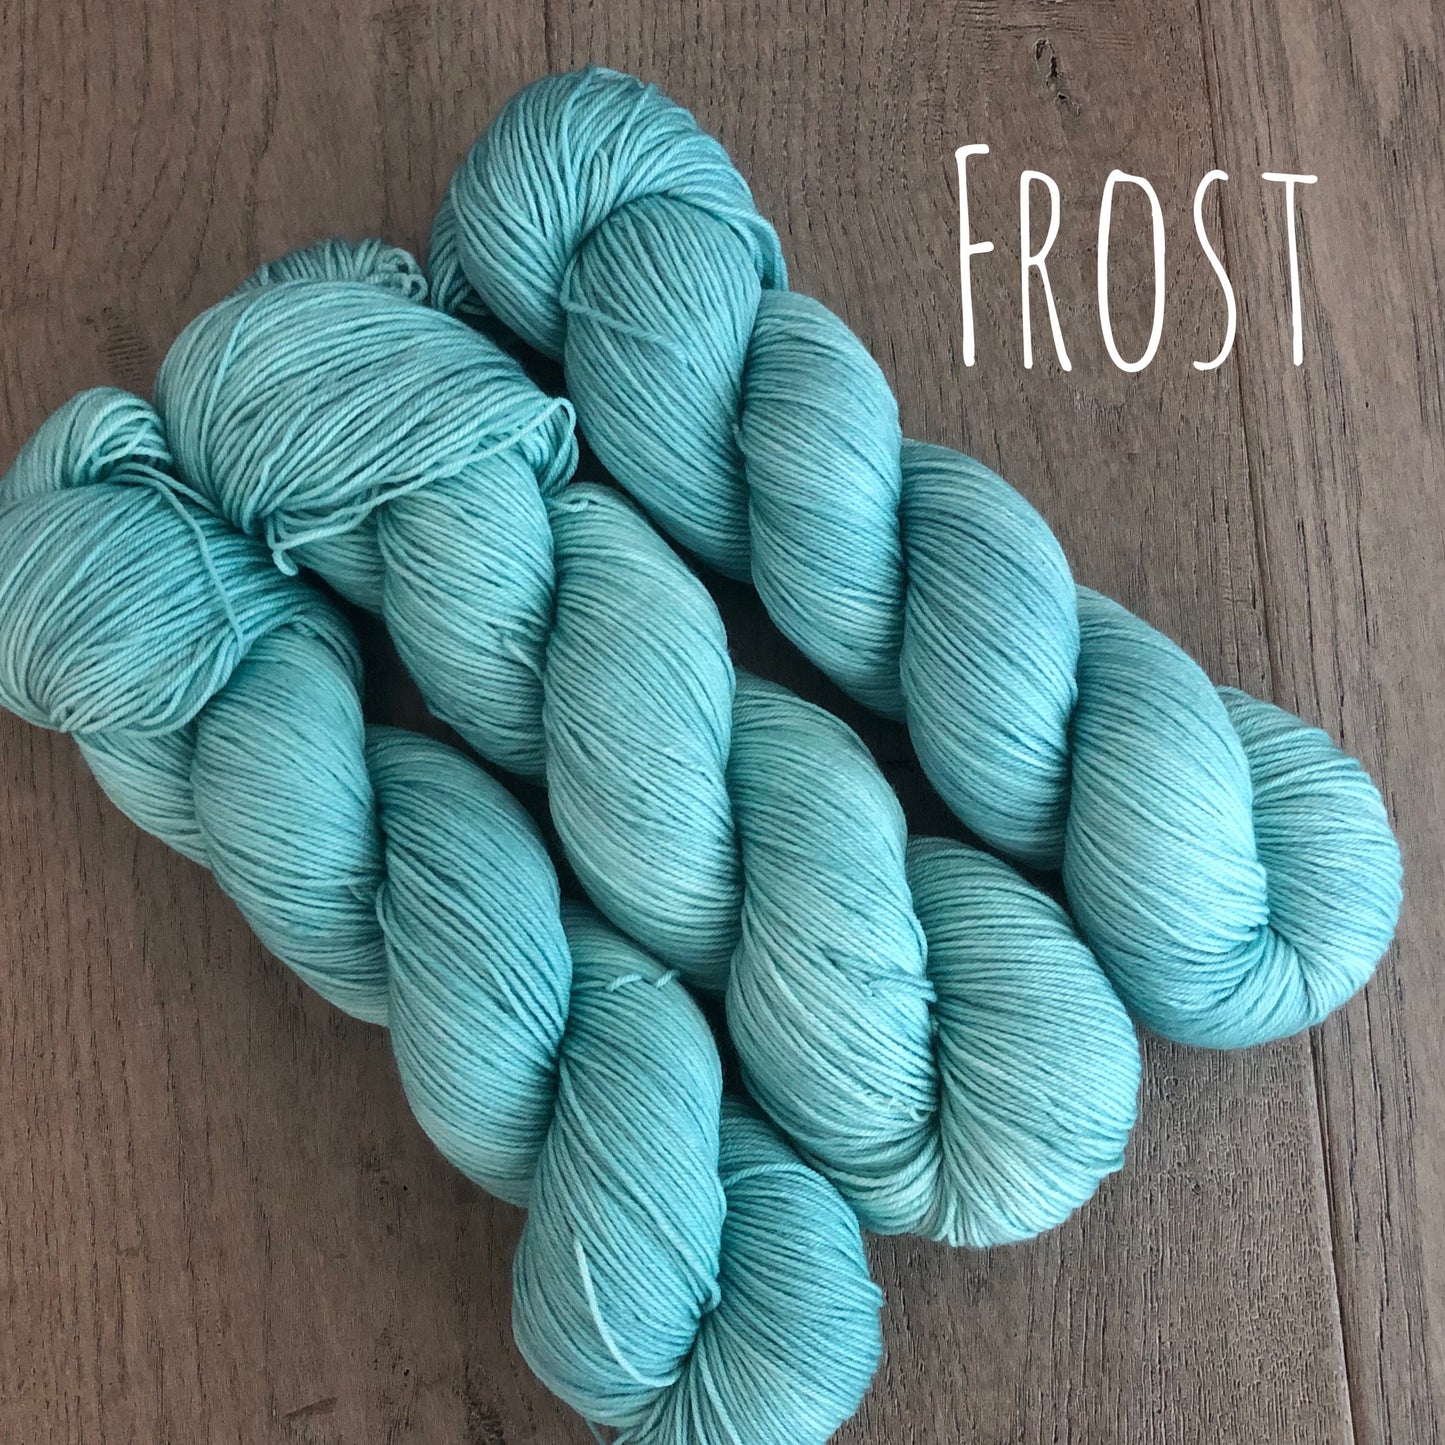 Frost Fingering Yarn